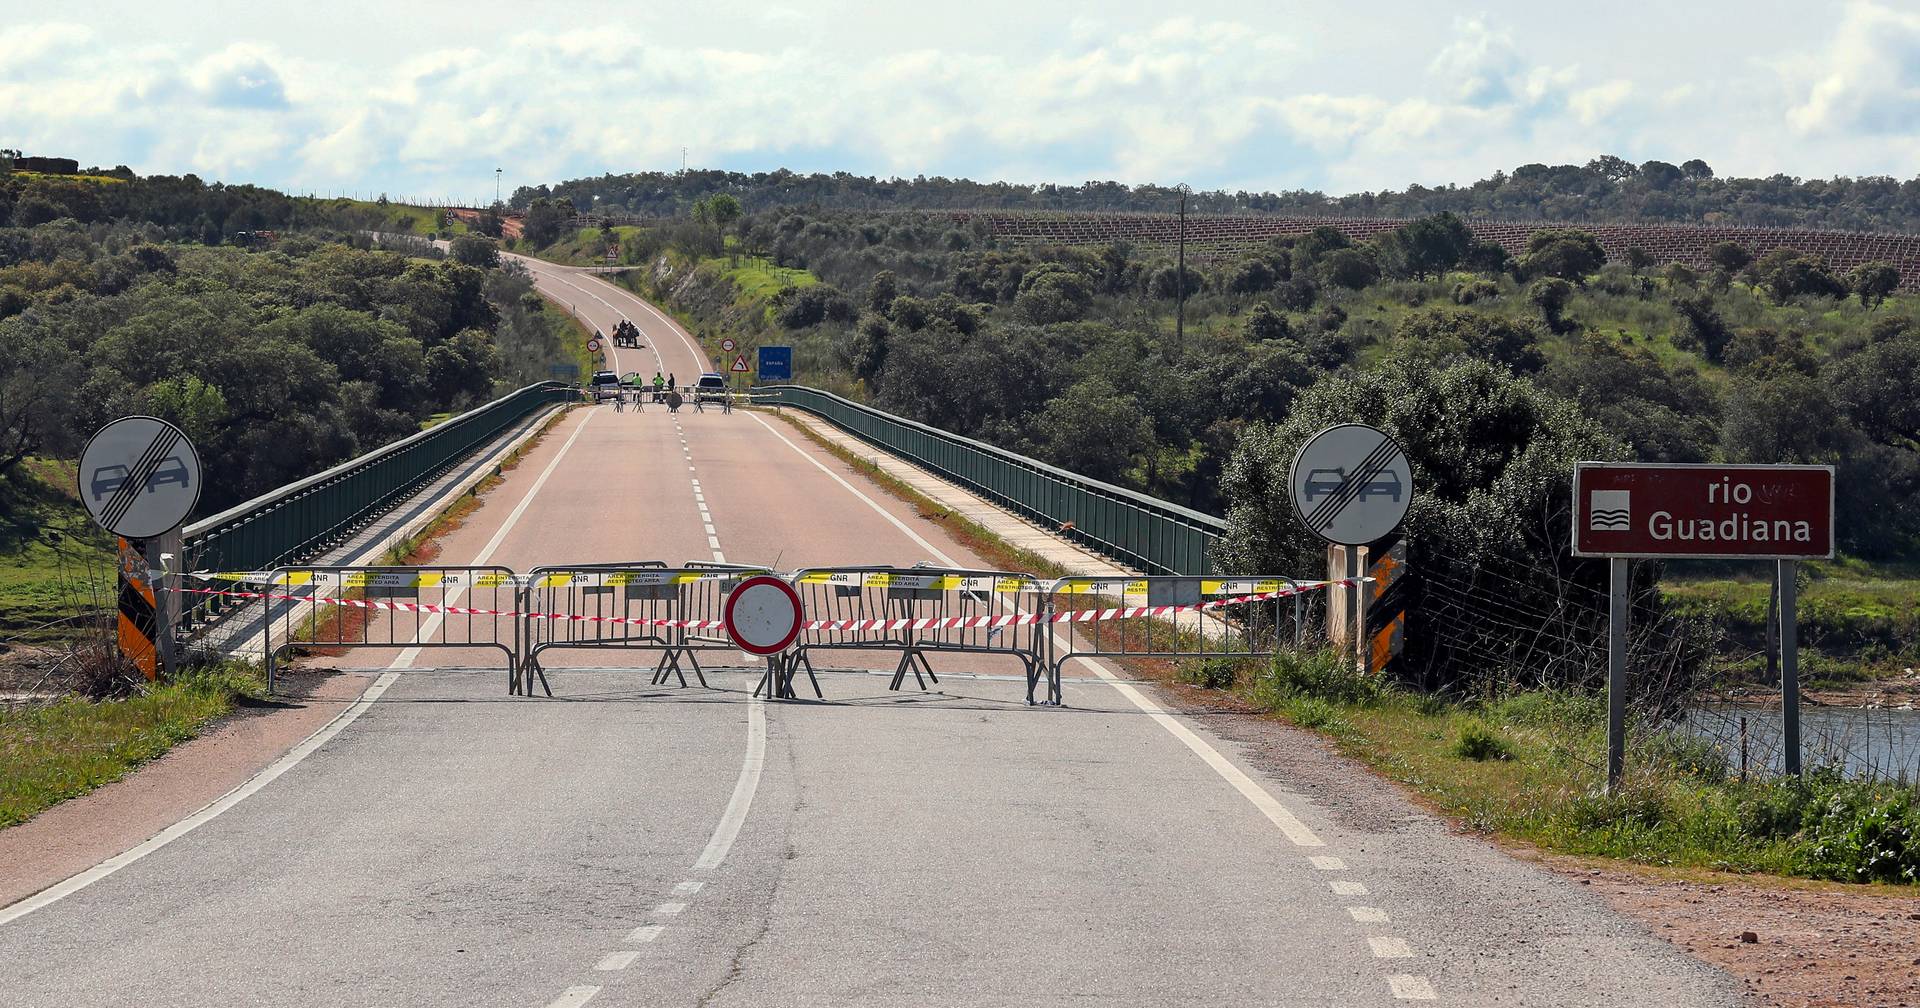 GNR: Fronteira Terrestre entre Portugal e Espanha